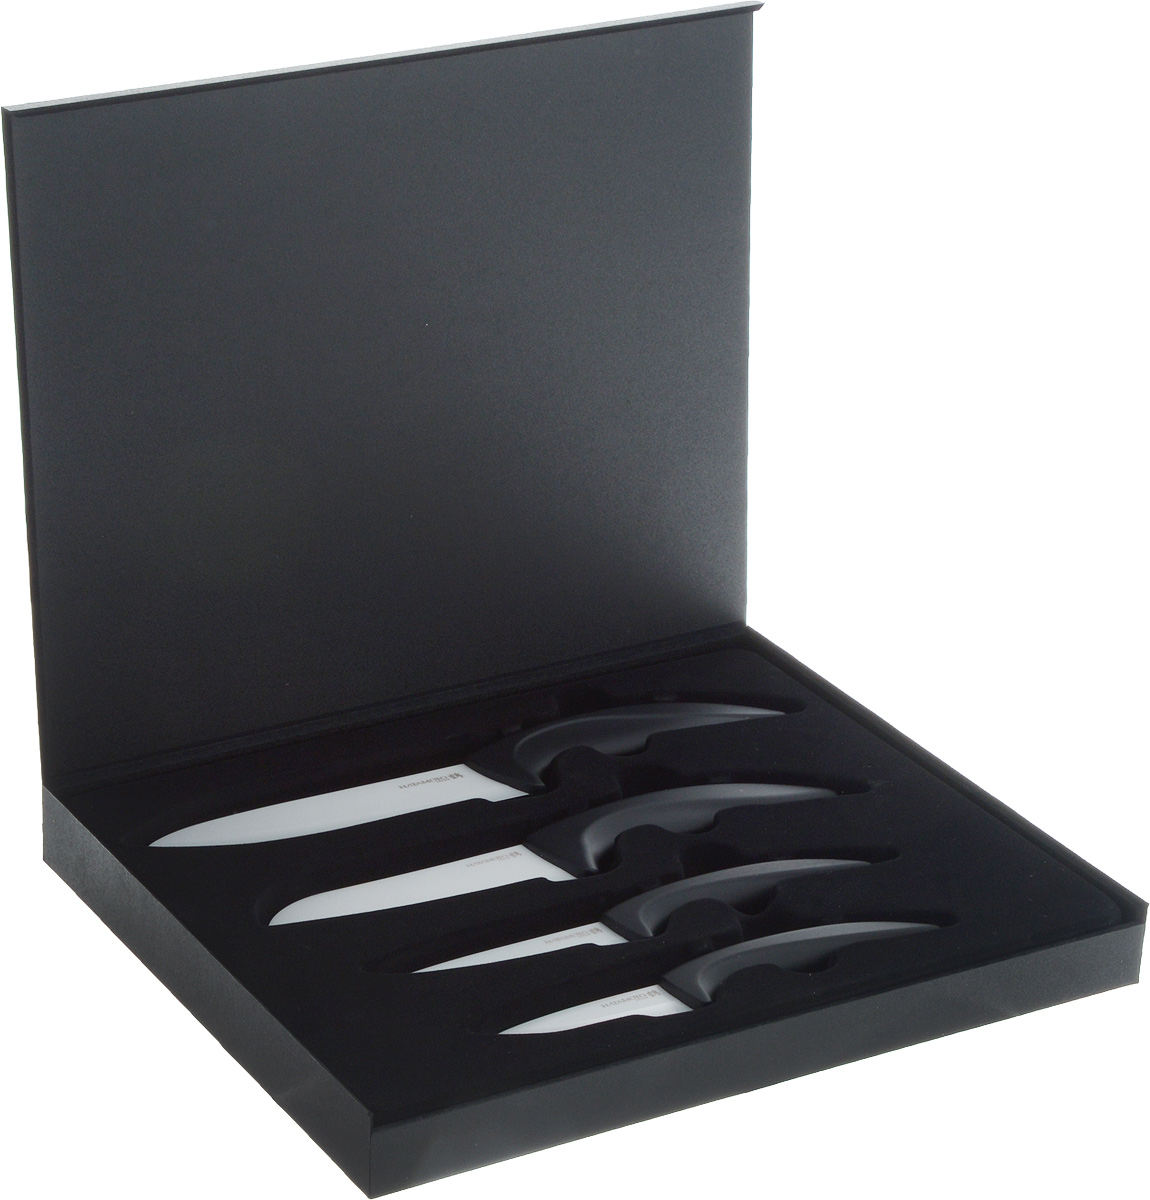 Набор "Hatamoto" состоит из четырех ножей, изготовленных из керамики. В набор входят: нож-шеф, два универсальных ножа и нож Сантоку.  Рукоятки ножей прорезинены и имеют элегантный, современный вид, который подойдет к интерьеру любой кухни. Такой набор ножей займет  достойное место среди аксессуаров на вашей кухне.  Ножи хранятся в стильном деревянном футляре черного цвета.    Основные характеристики ножей "Hatamoto": - при правильном использование не нуждается в заточке, - не царапается в процессе резки, - не боится моющих средств, - весит меньше металлических ножей, - не окисляется, - на ноже не остается грязных пятен, - не ржавеет.   Дополнительные преимущества керамических ножей "Hatamoto":   - колоссальная острота и износостойкость режущей кромки, в духе и лучших традициях японских мастеров, - не требуют заточки в течение 4-5 лет, потому что циркониевая керамика уступает по твердости только алмазу, - не оставляют послевкусия, потому что не вступают в реакцию ни с какими продуктами, - не подвергаются ржавлению и не имеют трудноудаляемых грязных пятен, - рукоять из пластика, покрытого термостойким каучуком, предотвращает выскальзывание ножа, - рекомендованы для приготовления пищи маленьким детям, беременным женщинам, аллергикам, а также в дошкольных и лечебно- профилактических учреждениях.     Длина лезвия ножа-шеф: 15 см.  Длина общая ножа-шеф: 27 см.  Длина лезвия малого универсального ножа: 7 см. Длина общая малого универсального ножа: 17,5 см.  Длина лезвия большого универсального ножа: 10 см.  Длина общая большого универсального ножа: 19,5 см. Длина лезвия ножа Сантоку: 12 см.  Длина общая ножа Сантоку: 23,5 см.  Размер футляра: 30,5 х 24,5 х 3 см.